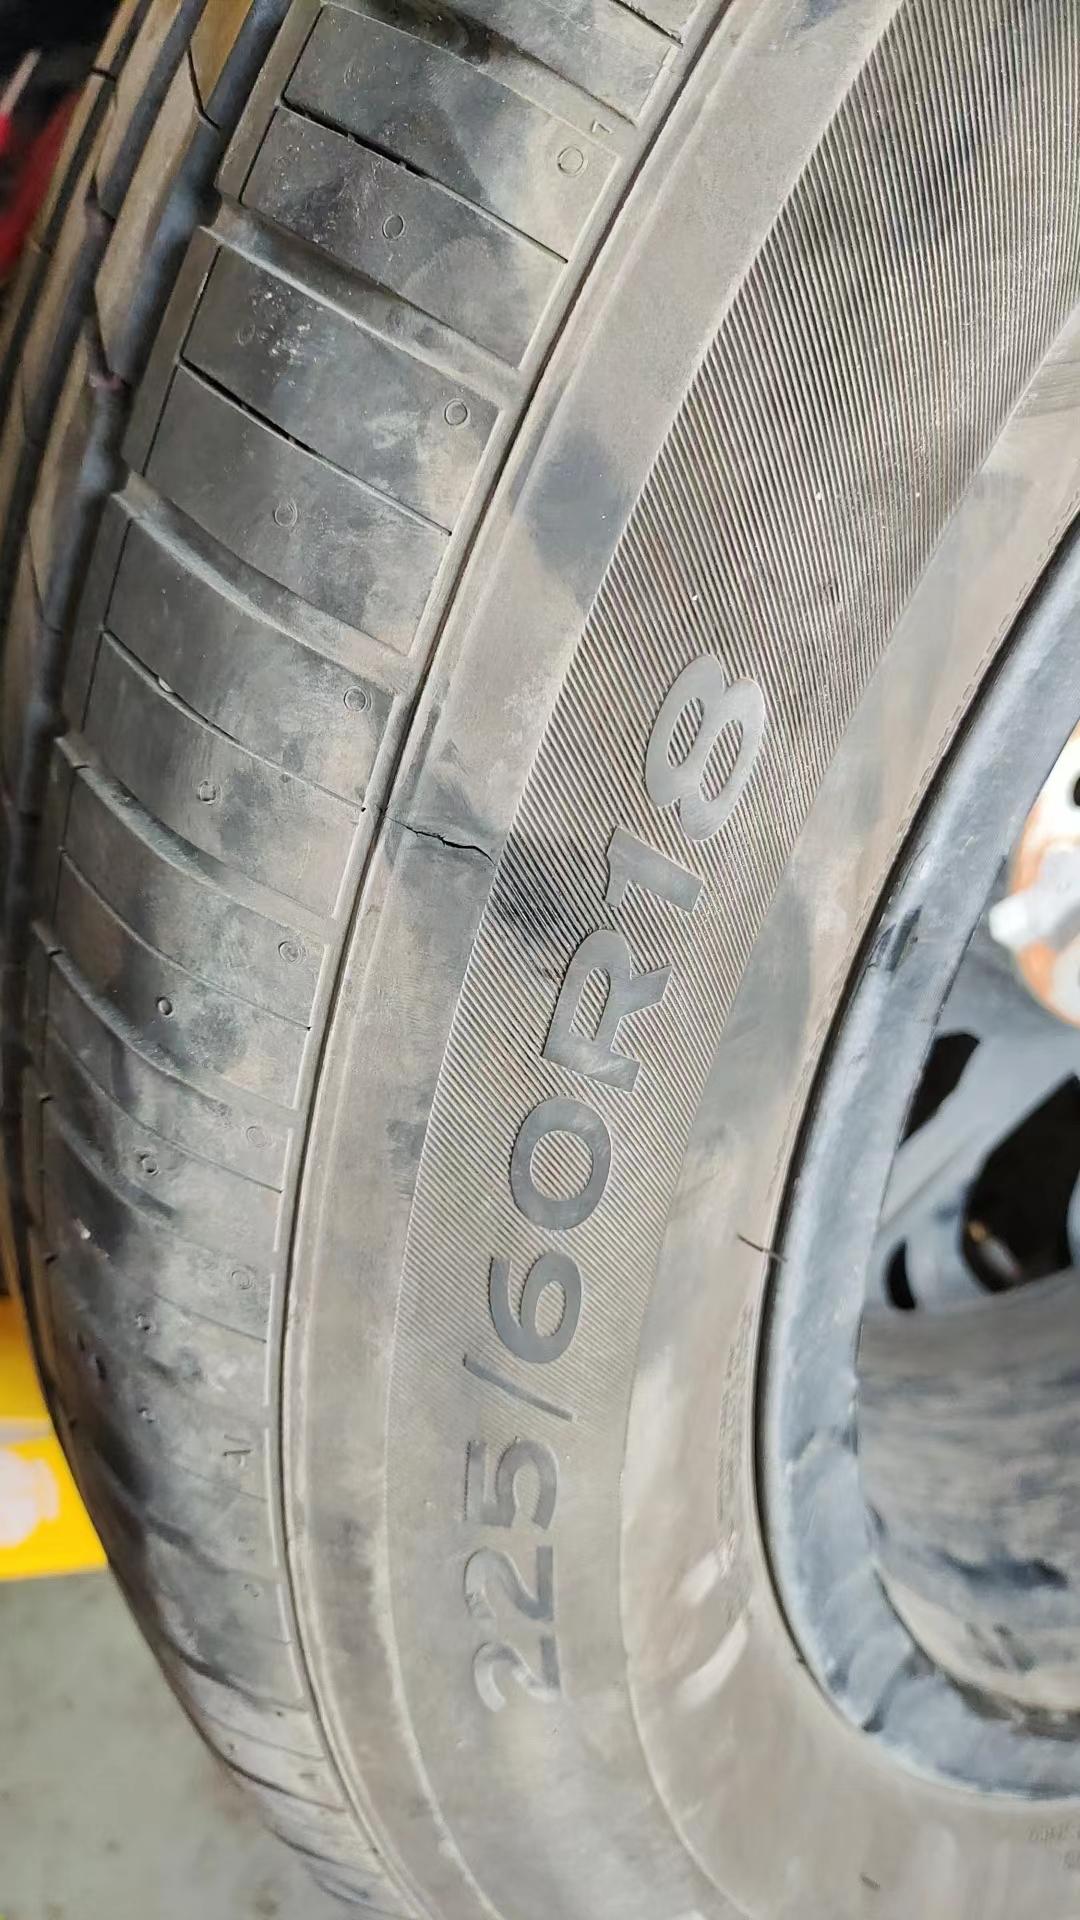 长安CS75 PLUS 我是今年2月份买车长安二代75p目前2500公里轮胎暴胎厂家说过质保期